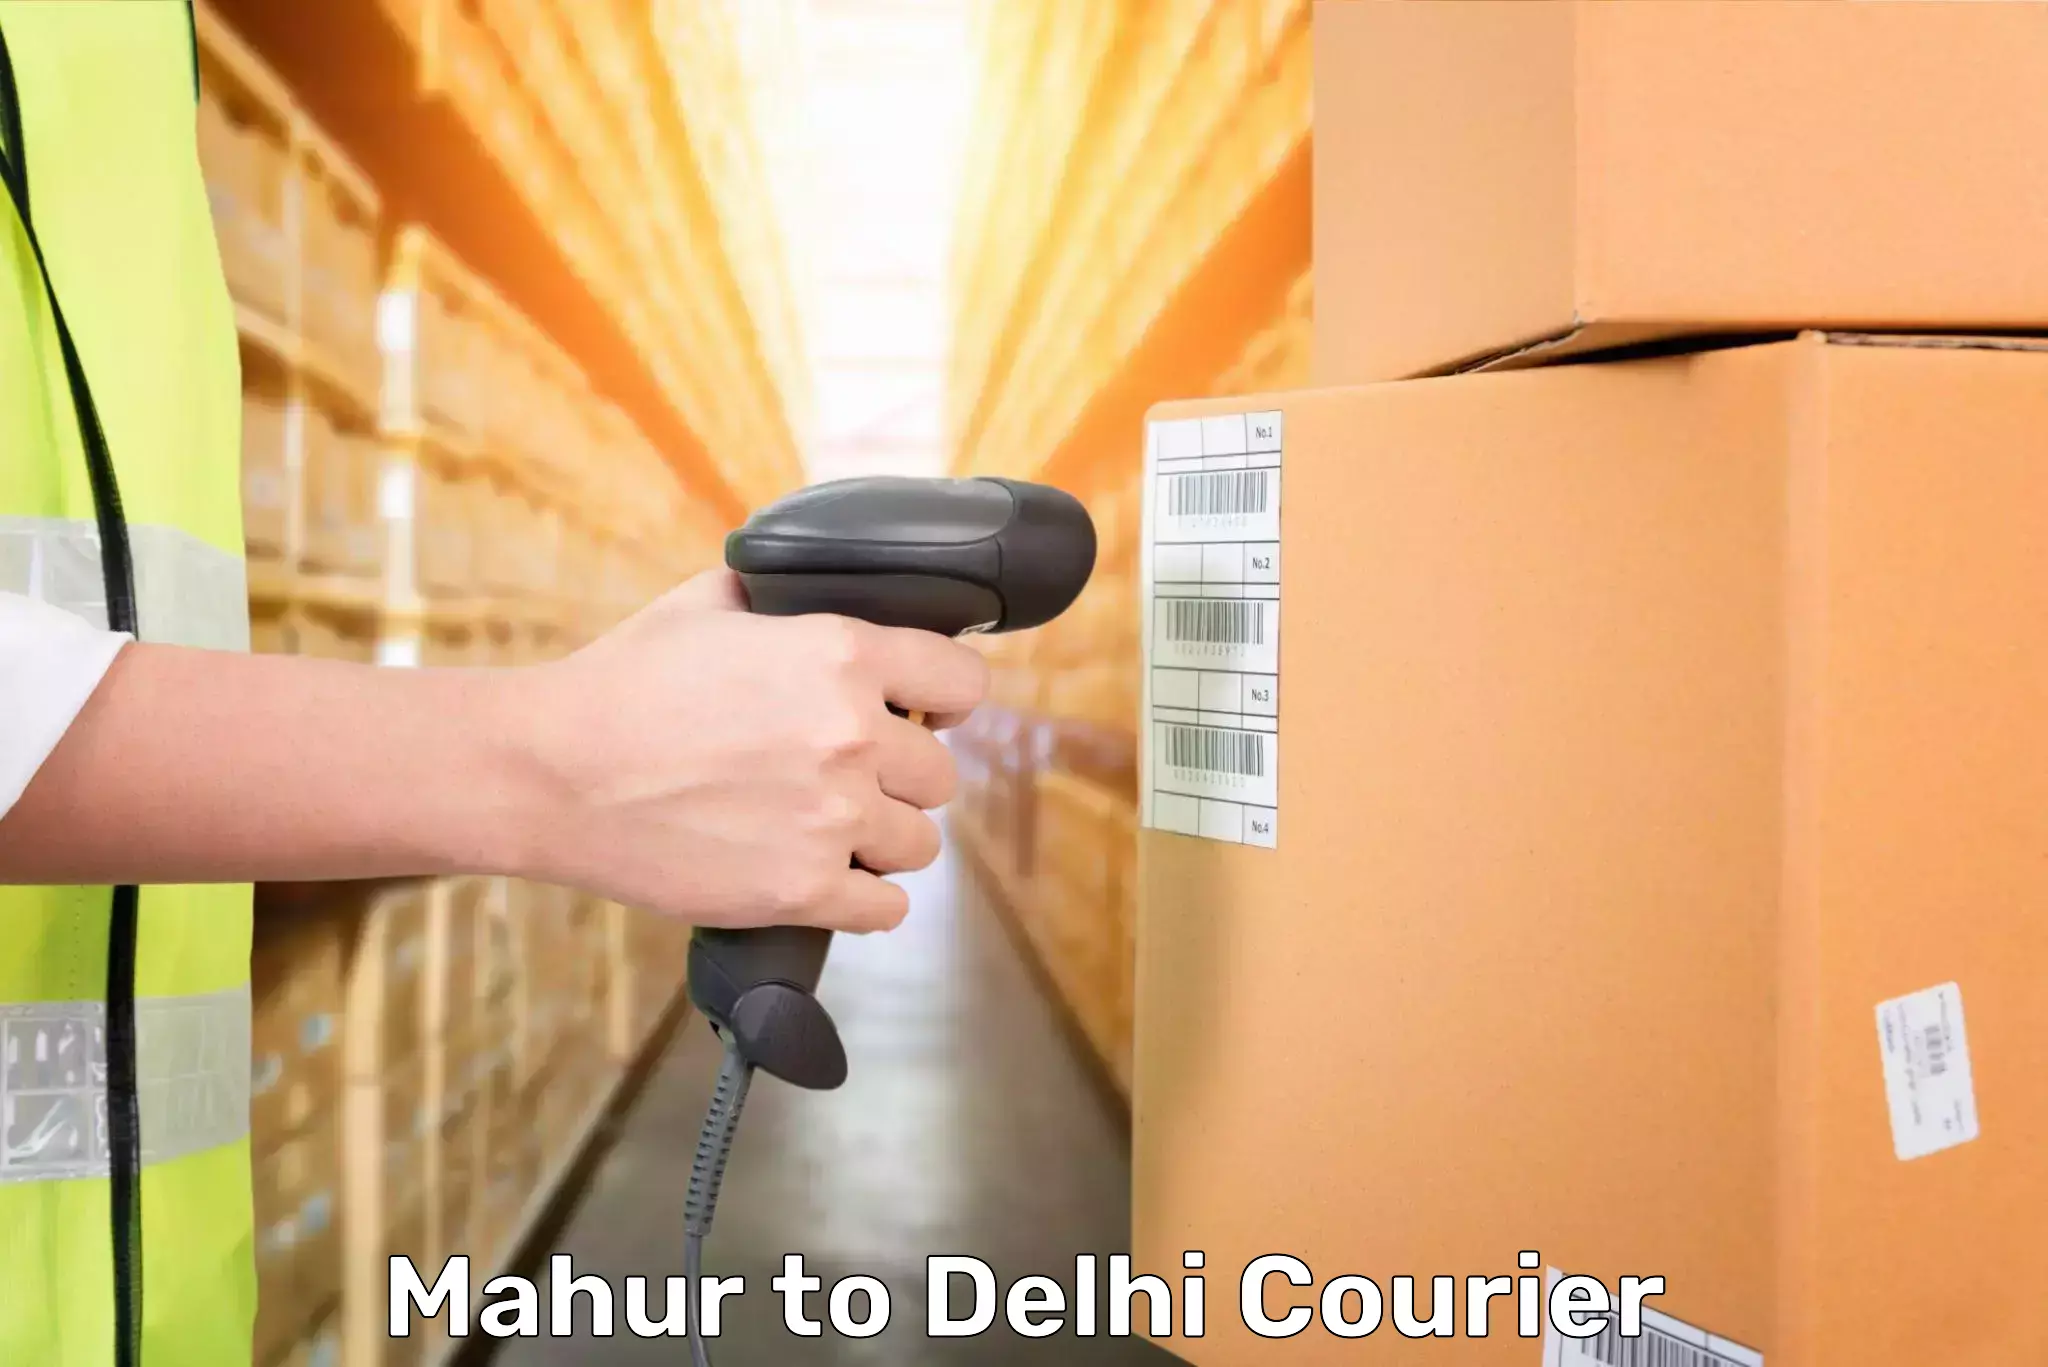 Baggage shipping experts Mahur to Delhi